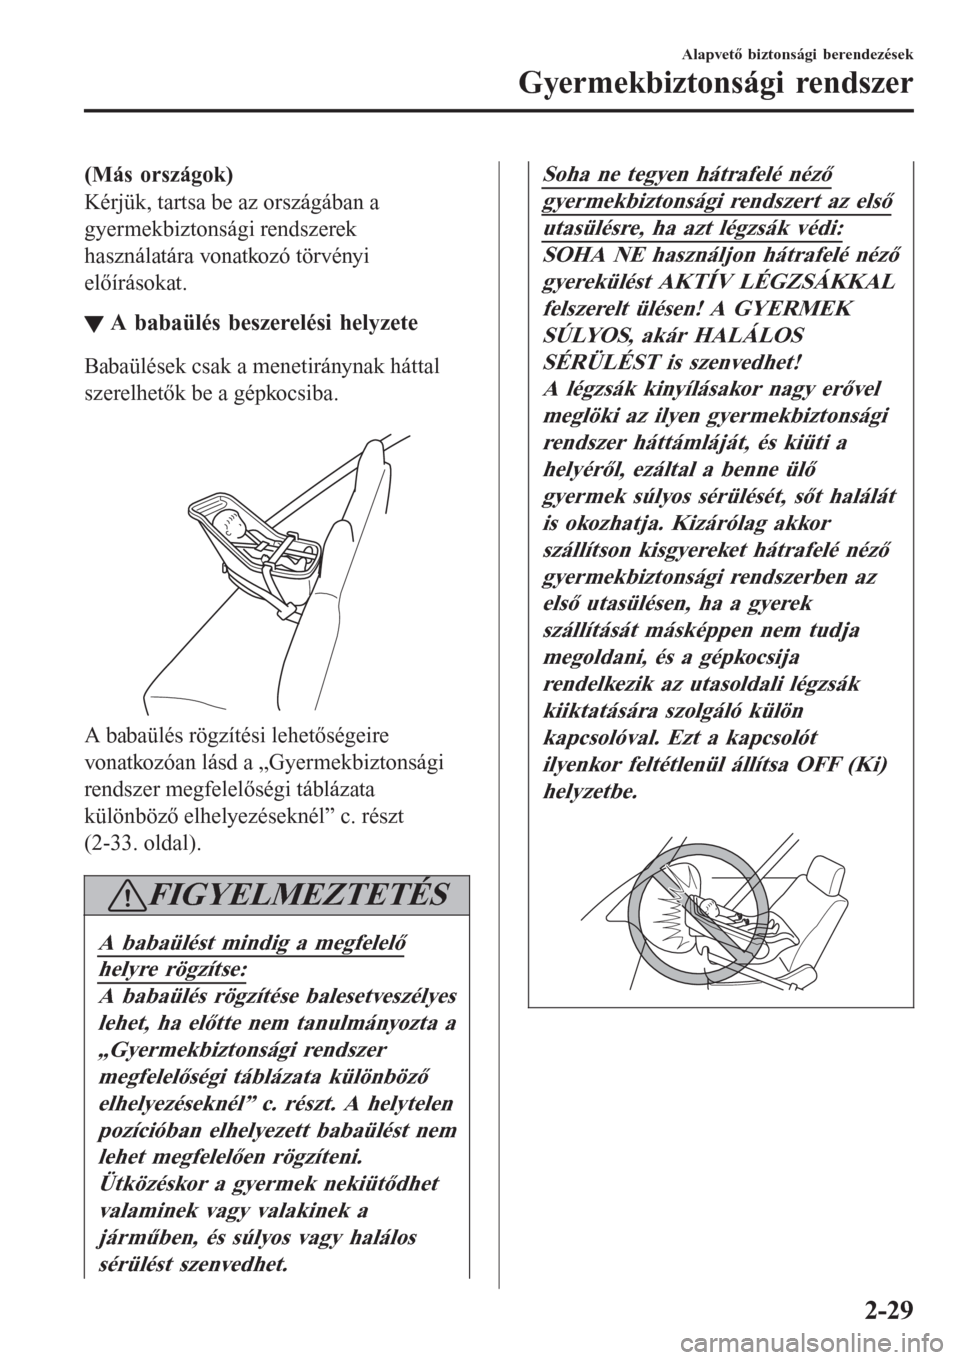 MAZDA MODEL CX-3 2016  Kezelési útmutató (in Hungarian) (Más országok)
Kérjük, tartsa be az országában a
gyermekbiztonsági rendszerek
használatára vonatkozó törvényi
előírásokat.
▼A babaülés beszerelési helyzete
Babaülések csak a mene